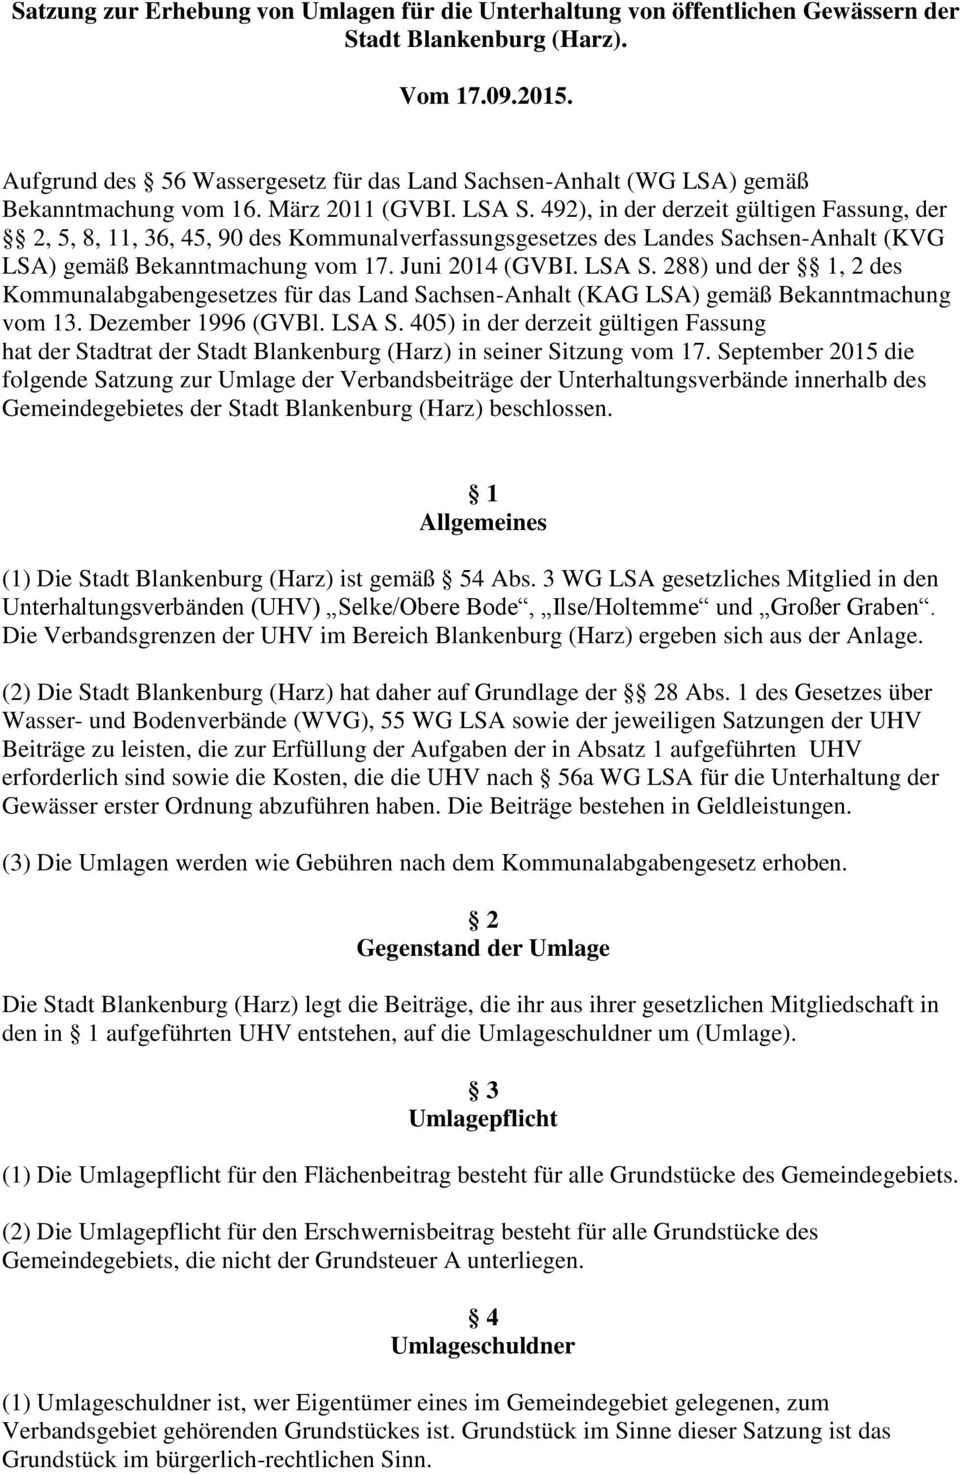 492), in der derzeit gültigen Fassung, der 2, 5, 8, 11, 36, 45, 90 des Kommunalverfassungsgesetzes des Landes Sachsen-Anhalt (KVG LSA) gemäß Bekanntmachung vom 17. Juni 2014 (GVBI. LSA S.